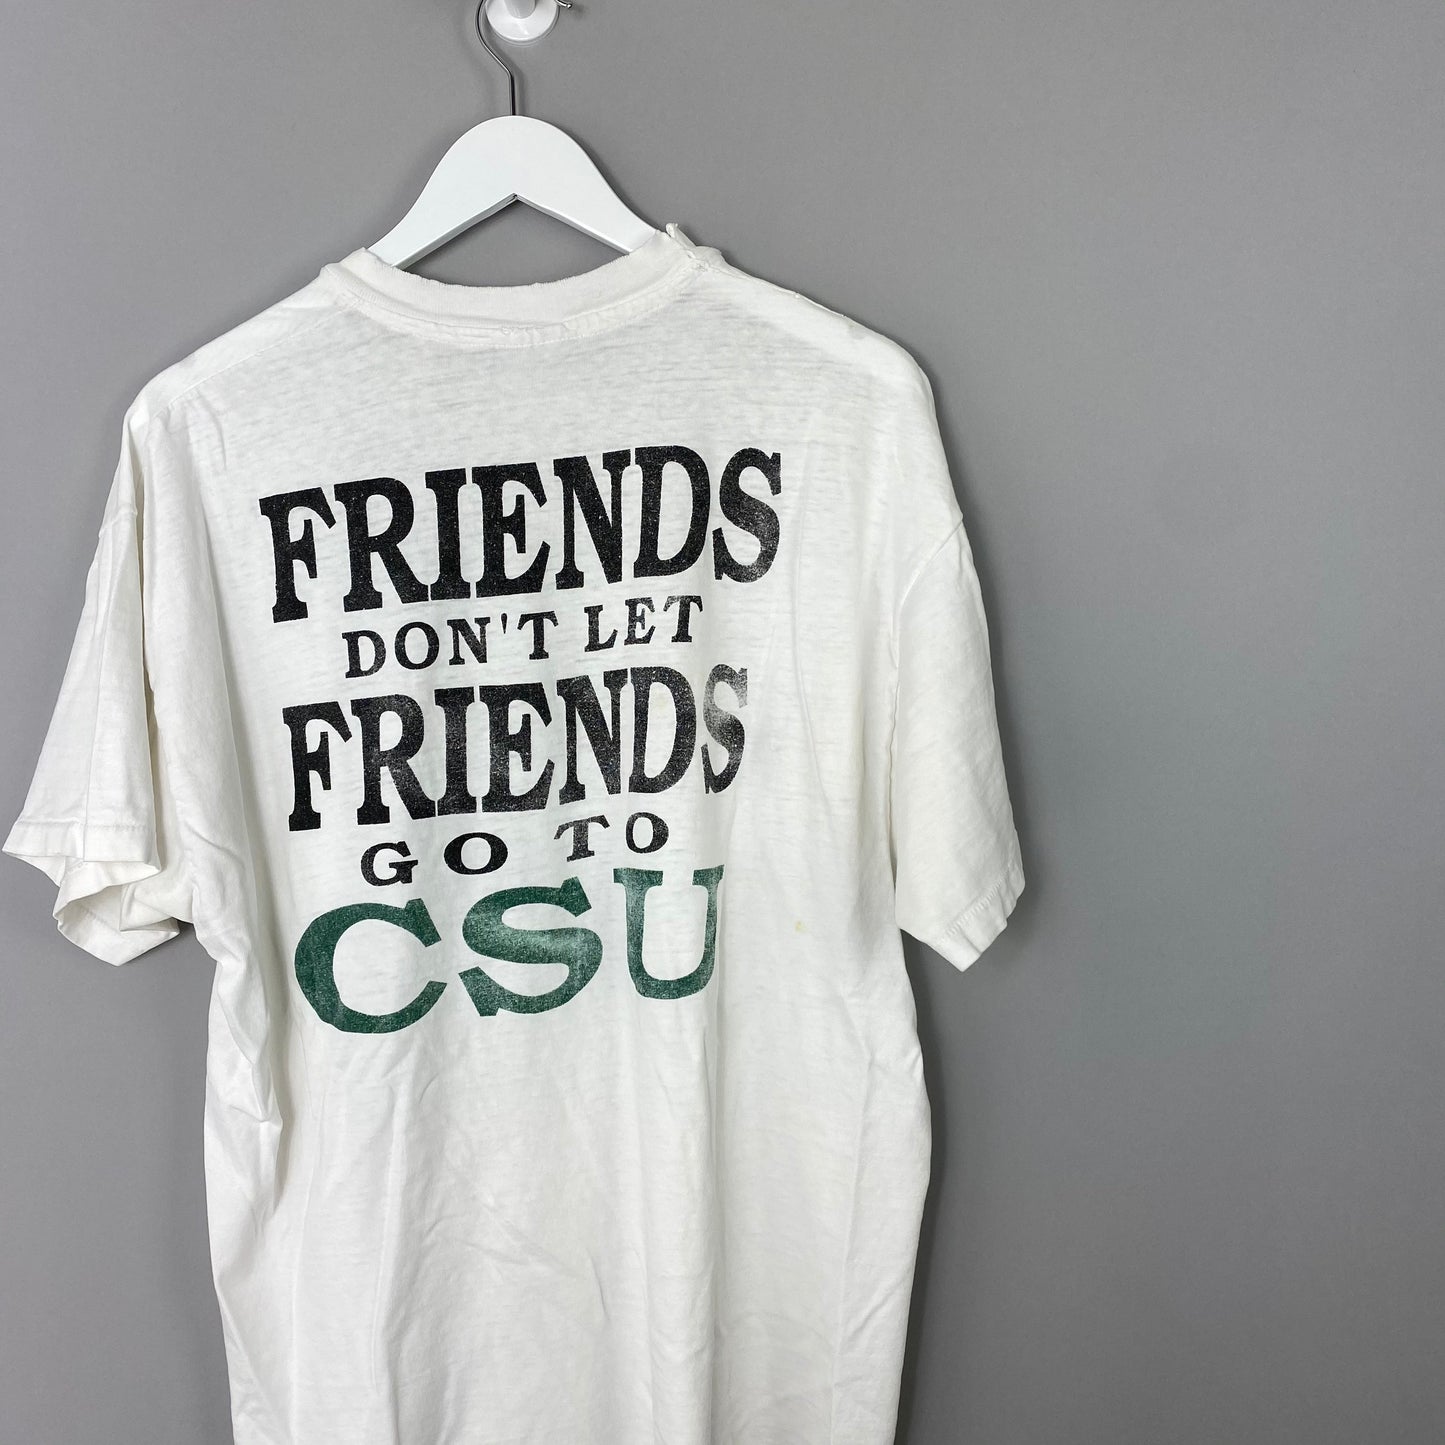 90s CSU VS CU T Shirt - XL